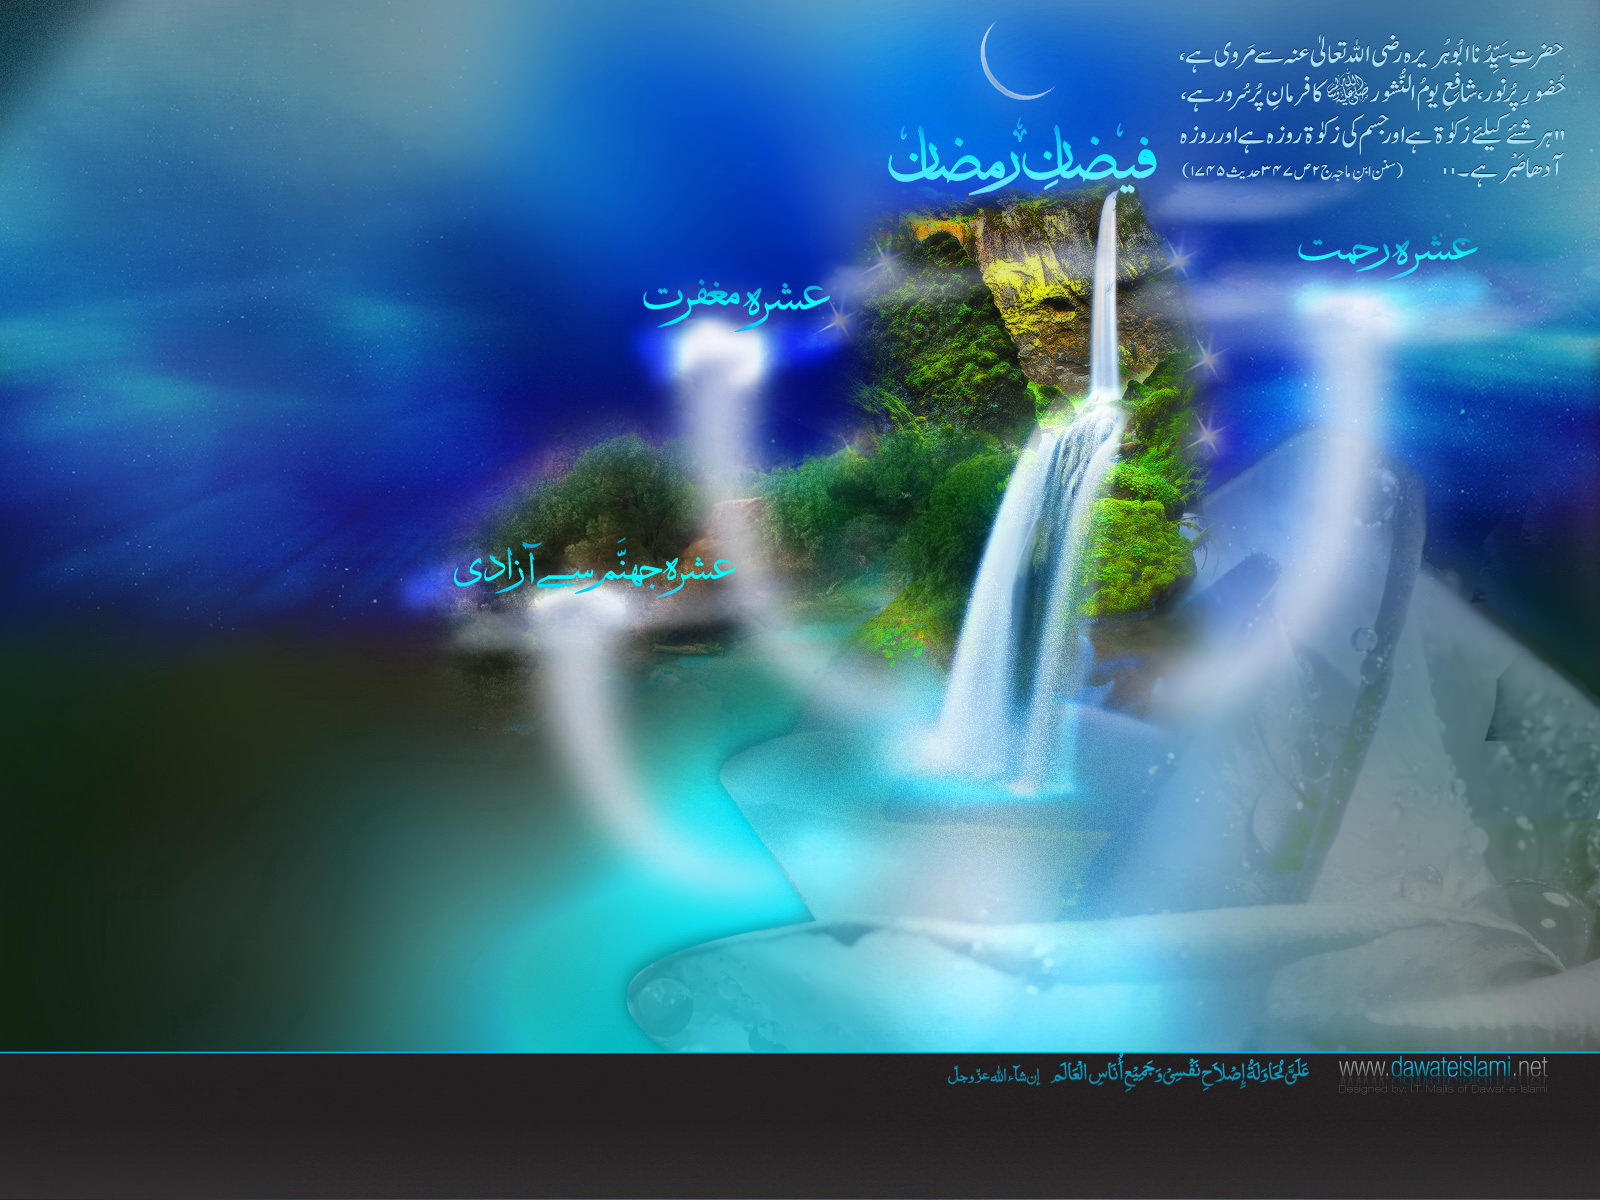 Dawat E Islami Ramzan , HD Wallpaper & Backgrounds